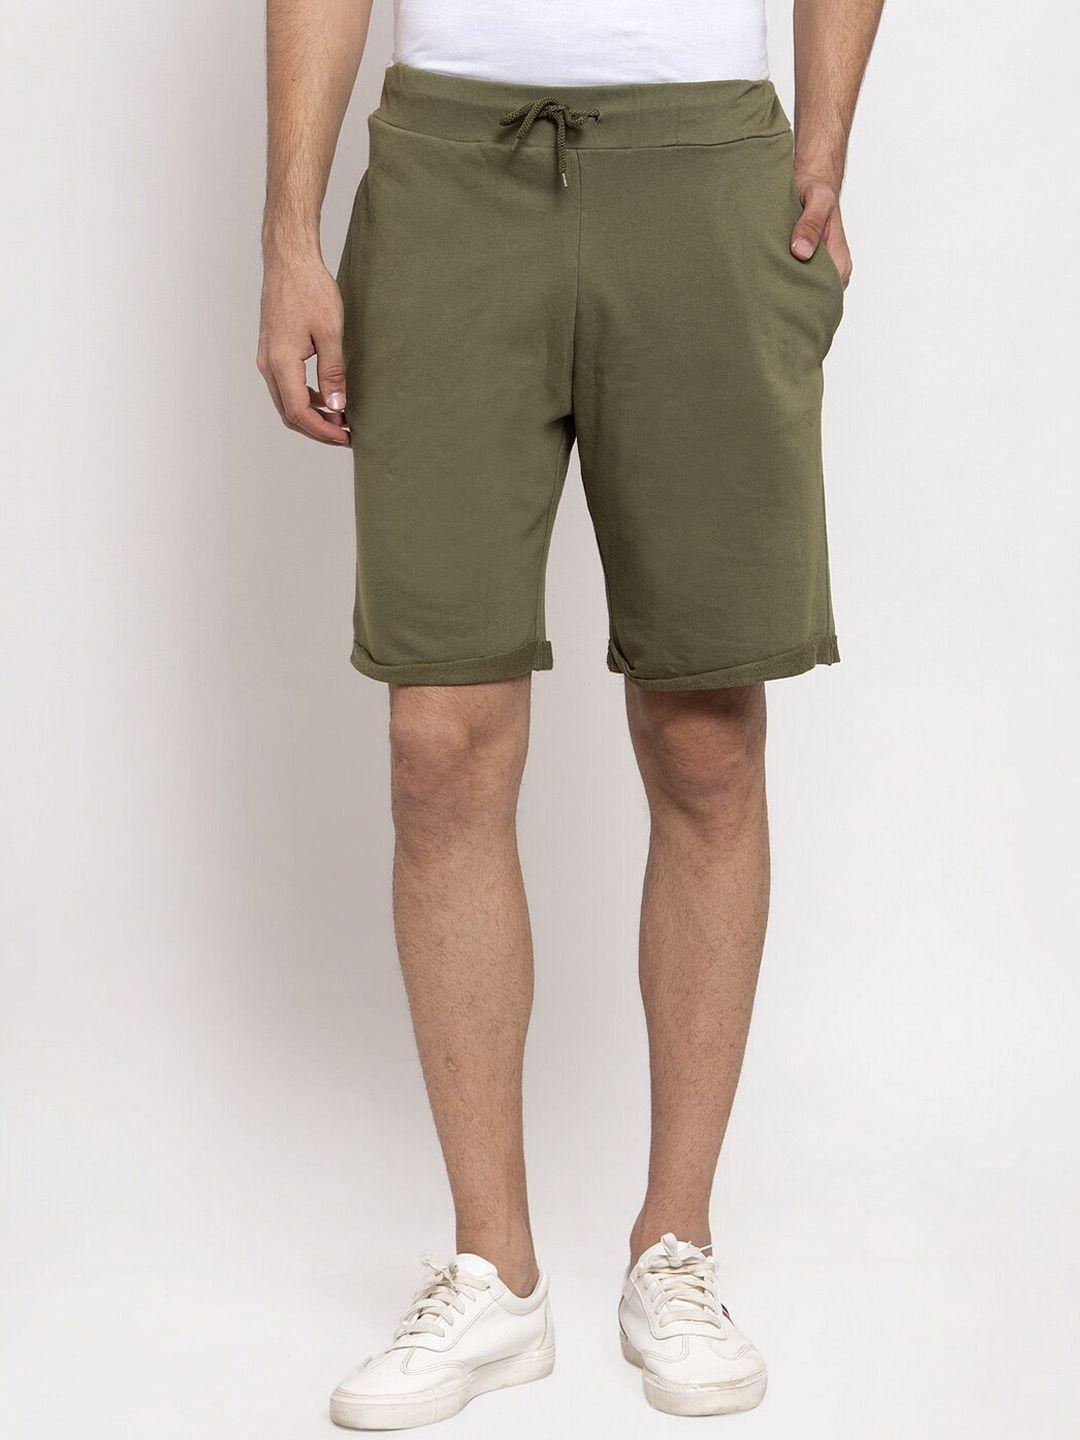 door74-men-olive-green-cotton-shorts